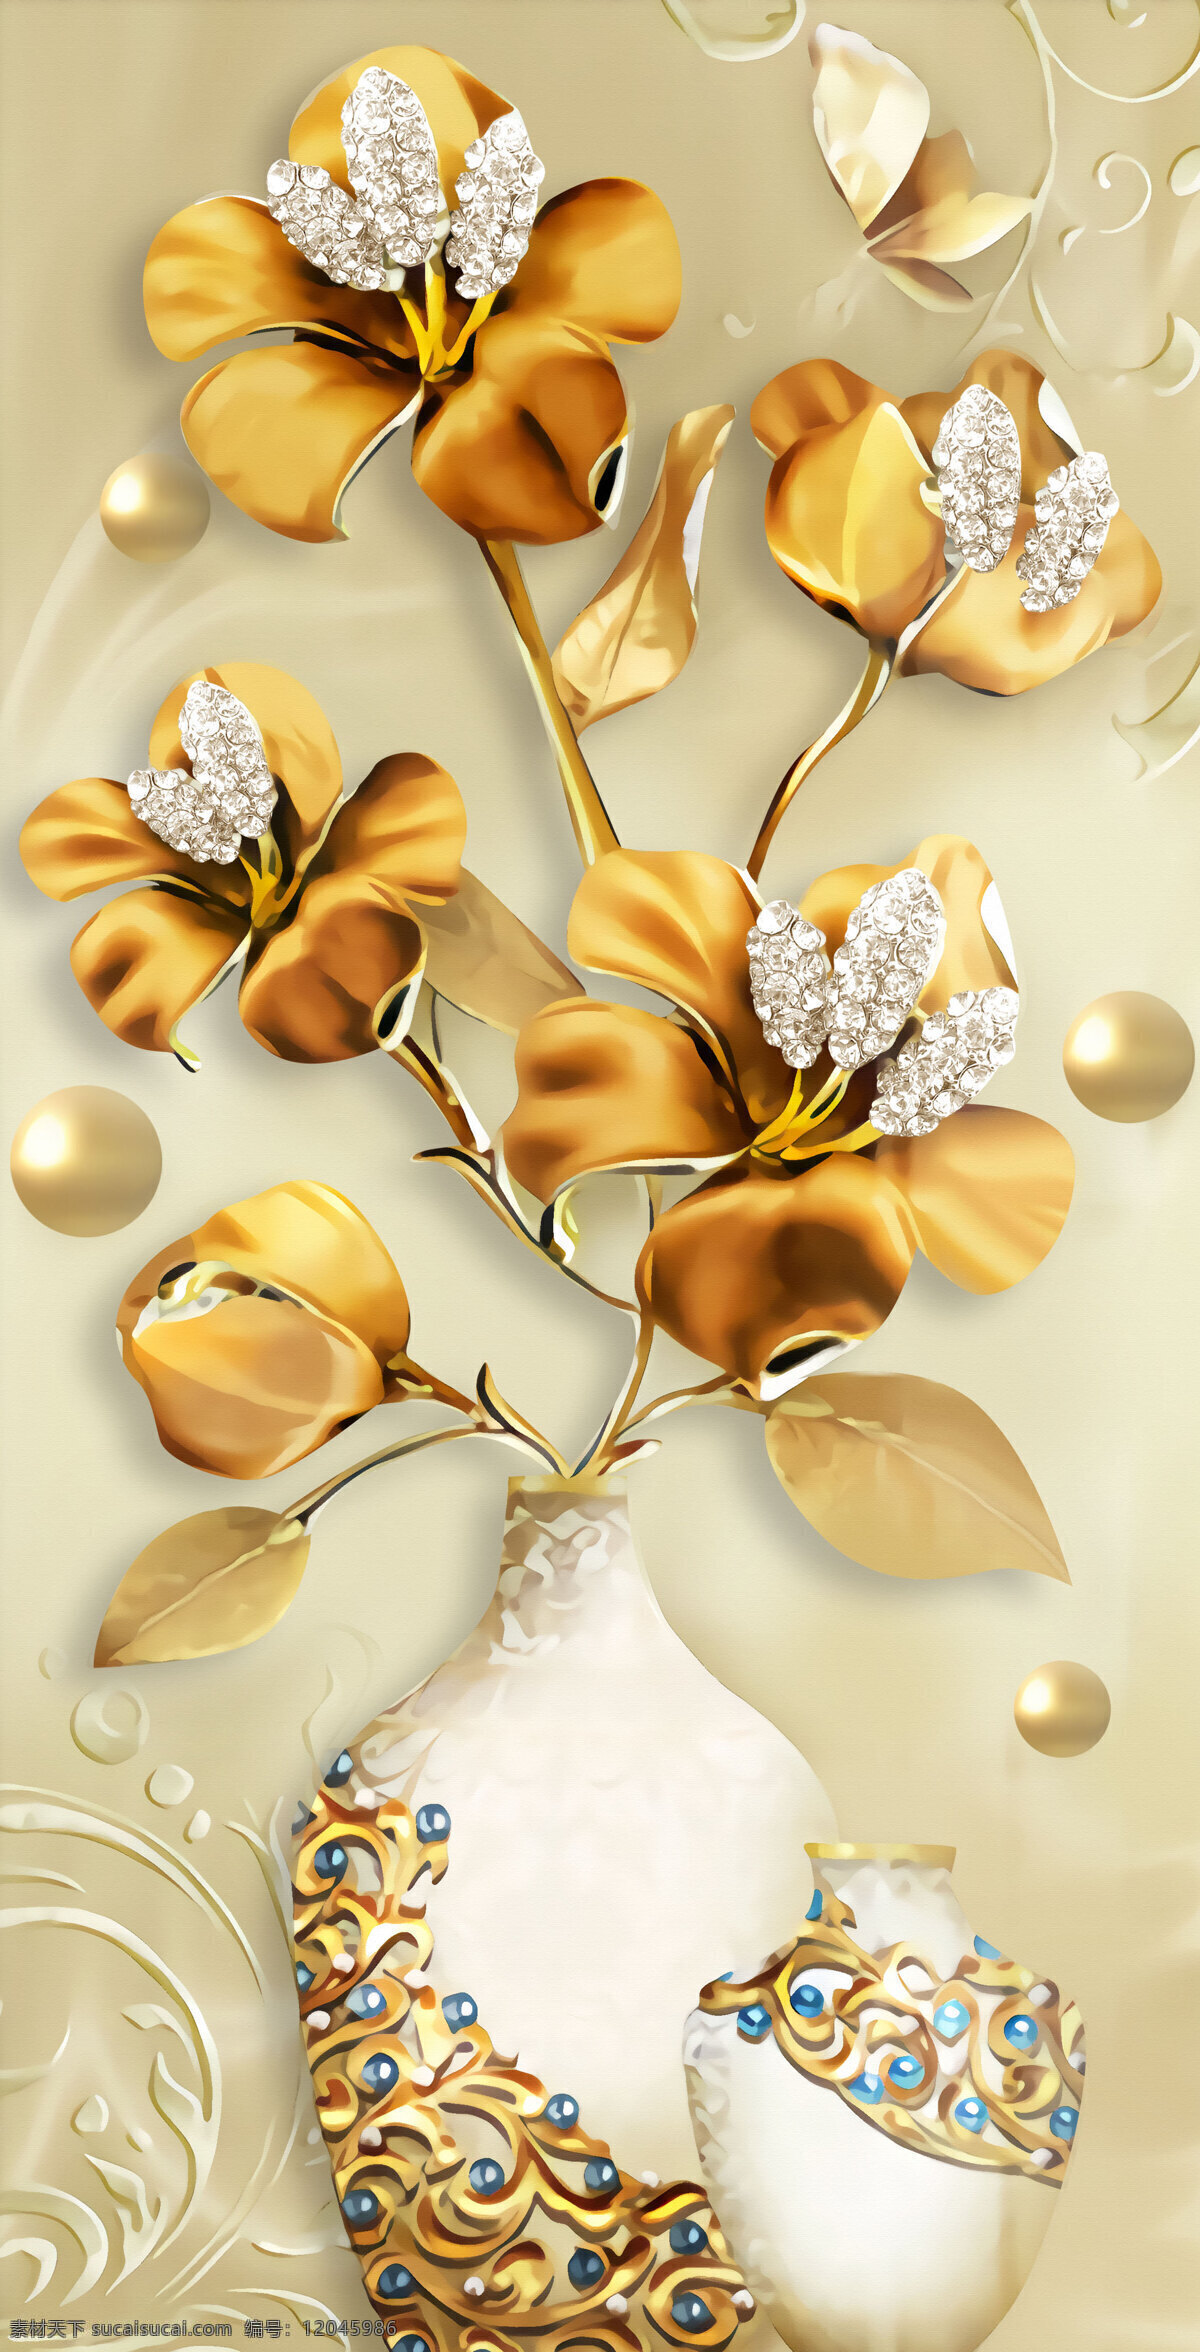 立体 浮雕 金色 珠宝 花卉 花瓶 玄关 金色花 立体珠宝 文化艺术